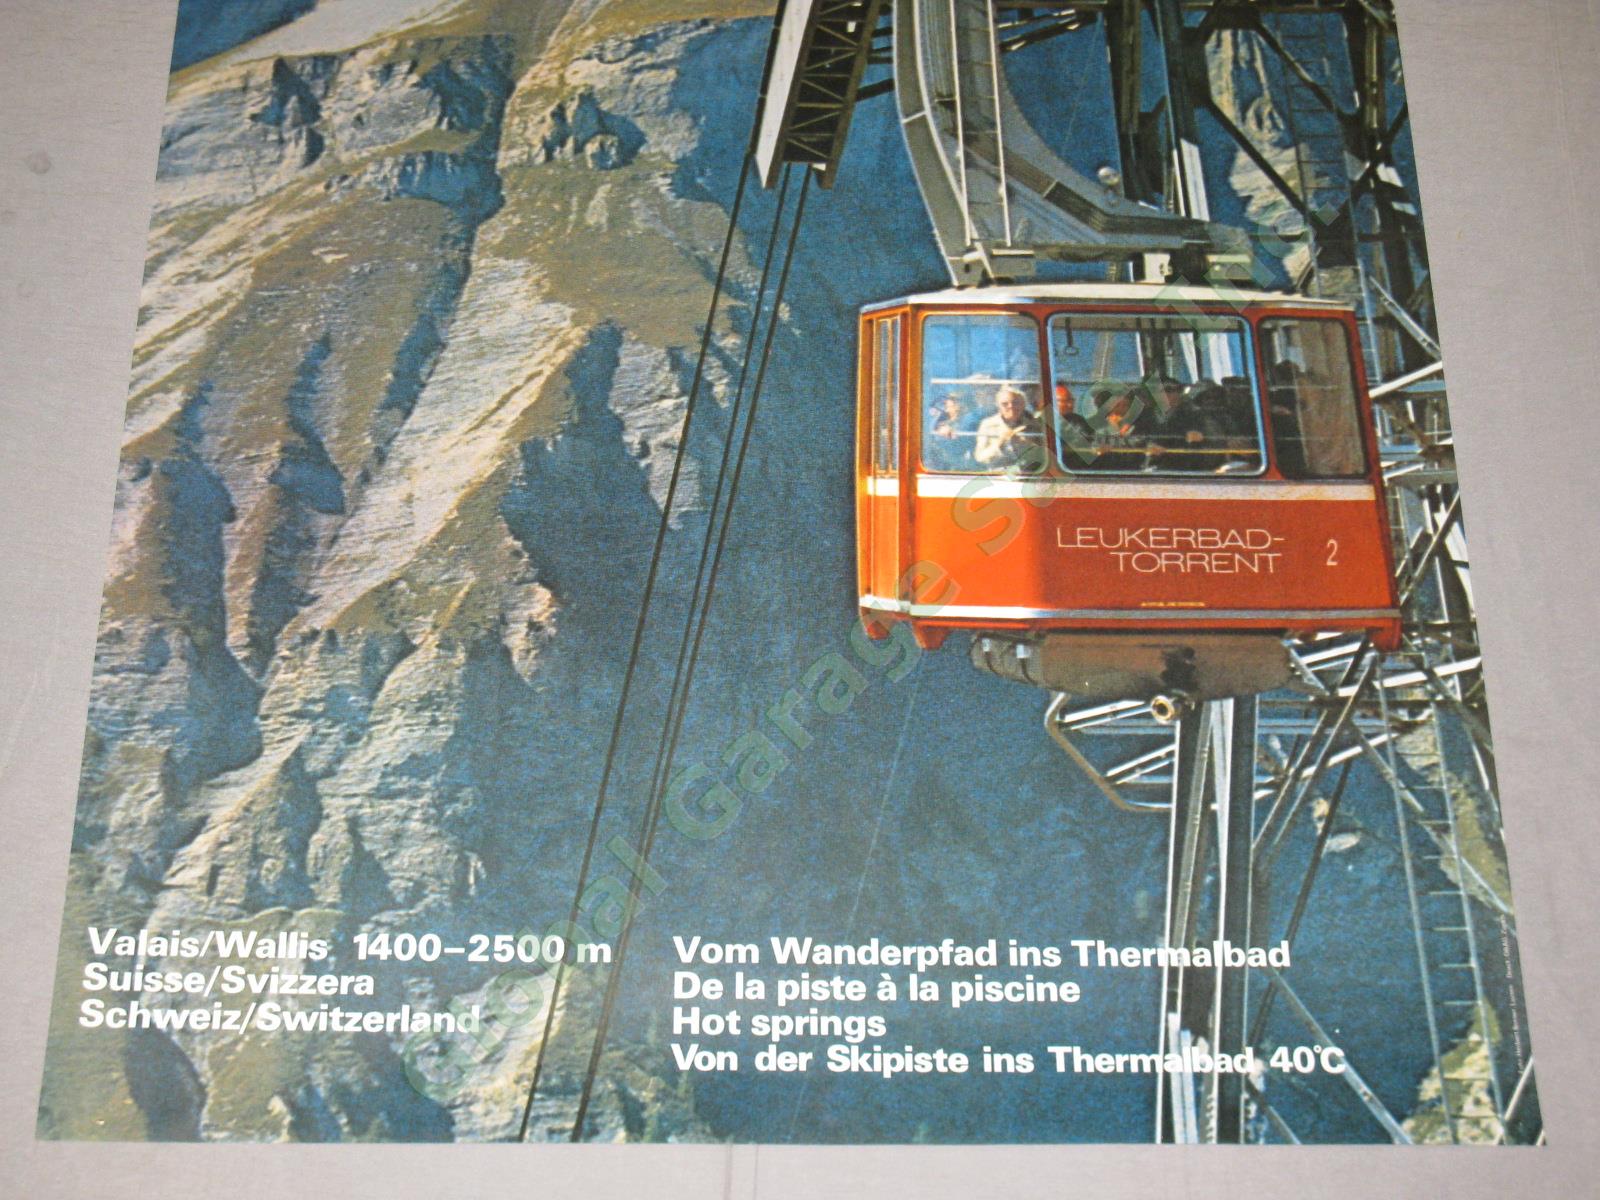 Vtg 1974 Swiss Travel Poster Leukerbad-Albinen Valais Ski Resort Hot Springs NR! 2